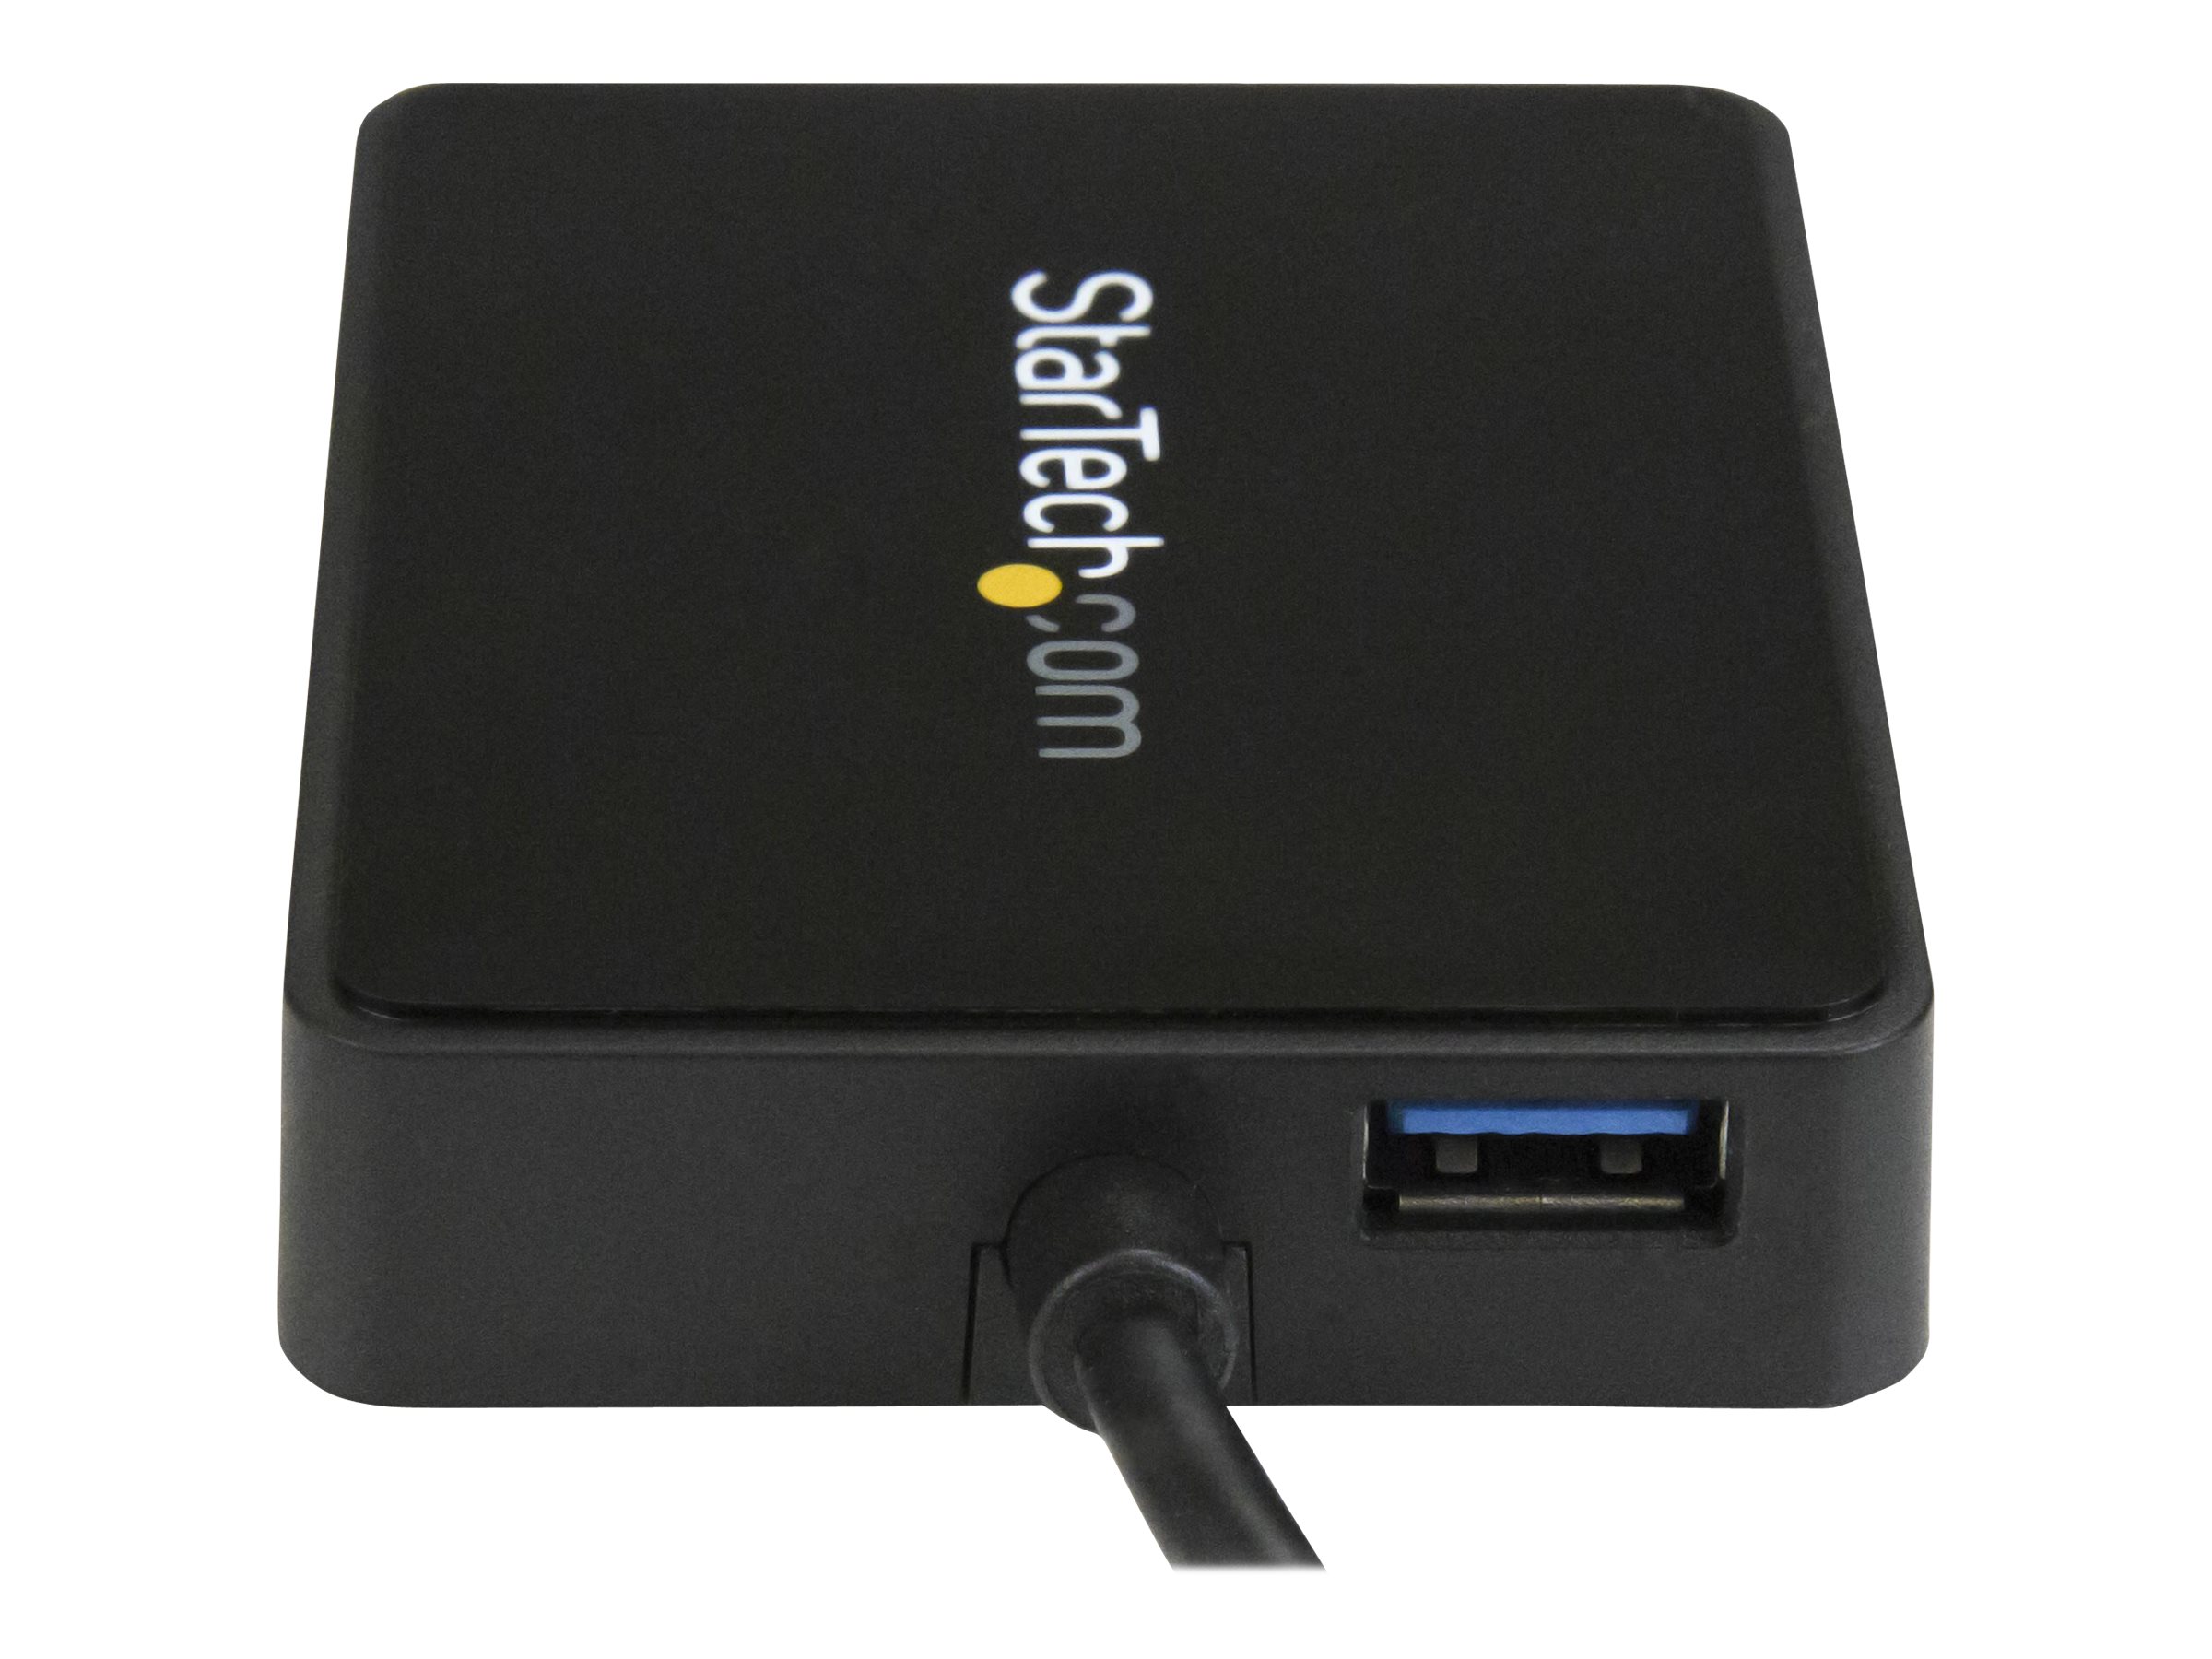 StarTech.com Adaptateur réseau USB-C vers 2 ports Gigabit Ethernet avec port USB 3.0 (Type-A) (US1GC301AU2R) - Adaptateur réseau - USB-C - Gigabit Ethernet x 2 + USB 3.0 - pour P/N: TB33A1C - US1GC301AU2R - Cartes réseau